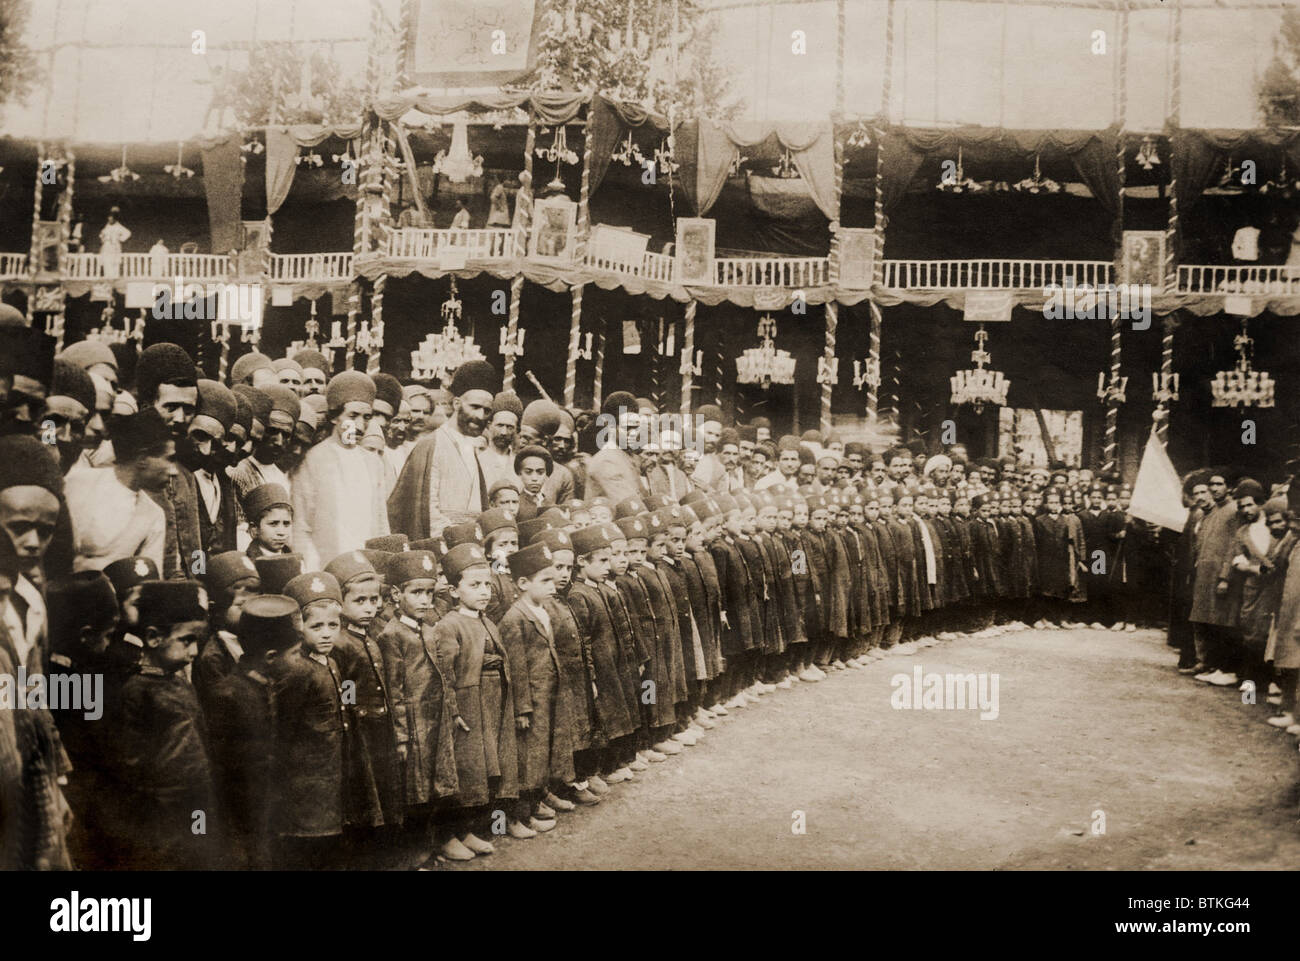 Anti-royalistischen Demonstration der uniformierten Studenten und Erwachsene in Täbris, Persien. Von 1907-1911 Persien wurde eine gescheiterte konstitutionelle Revolution, die von russischen und britischen imperialistischen Interessen unterdrückt wurde. 1908. Stockfoto